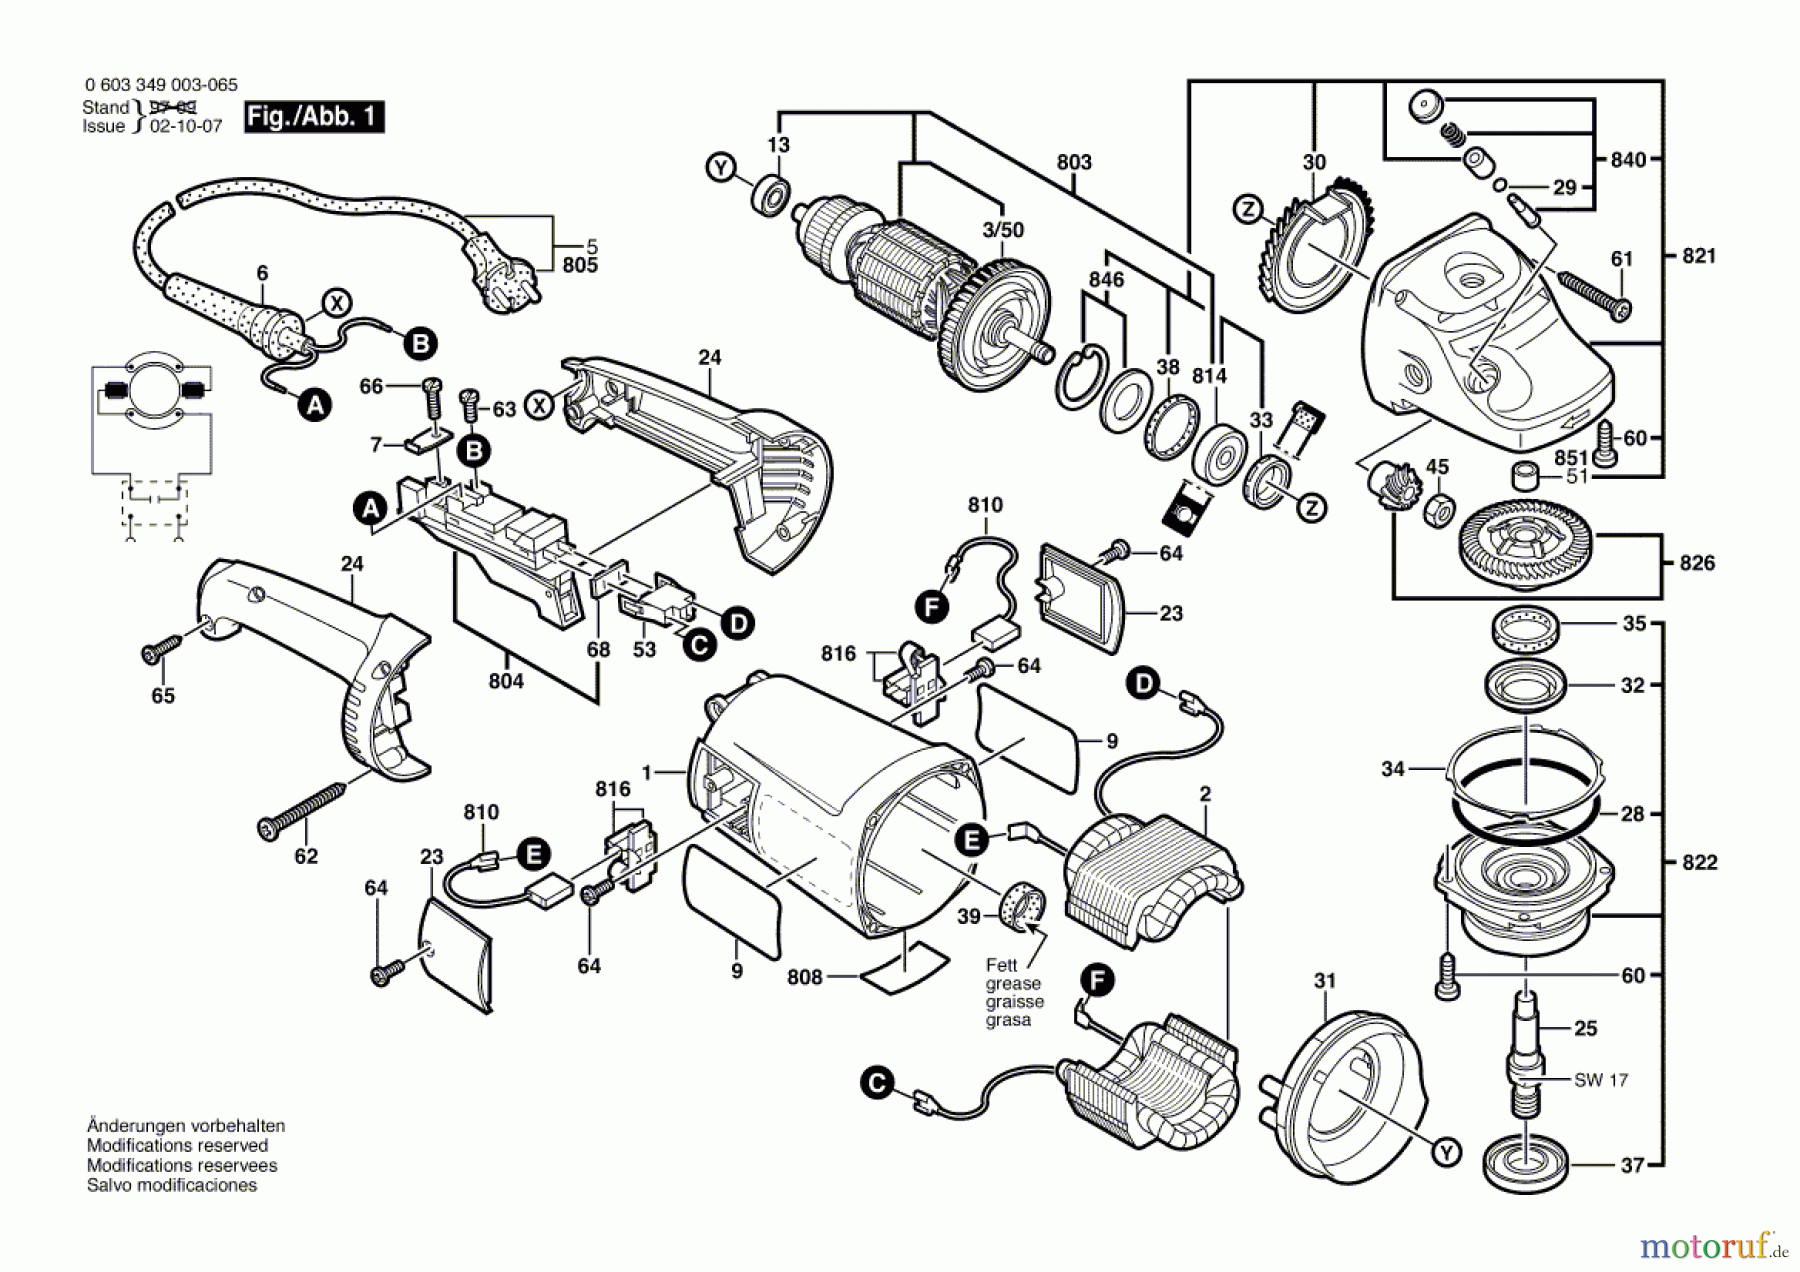  Bosch Werkzeug Winkelschleifer PWS 1800 Seite 1